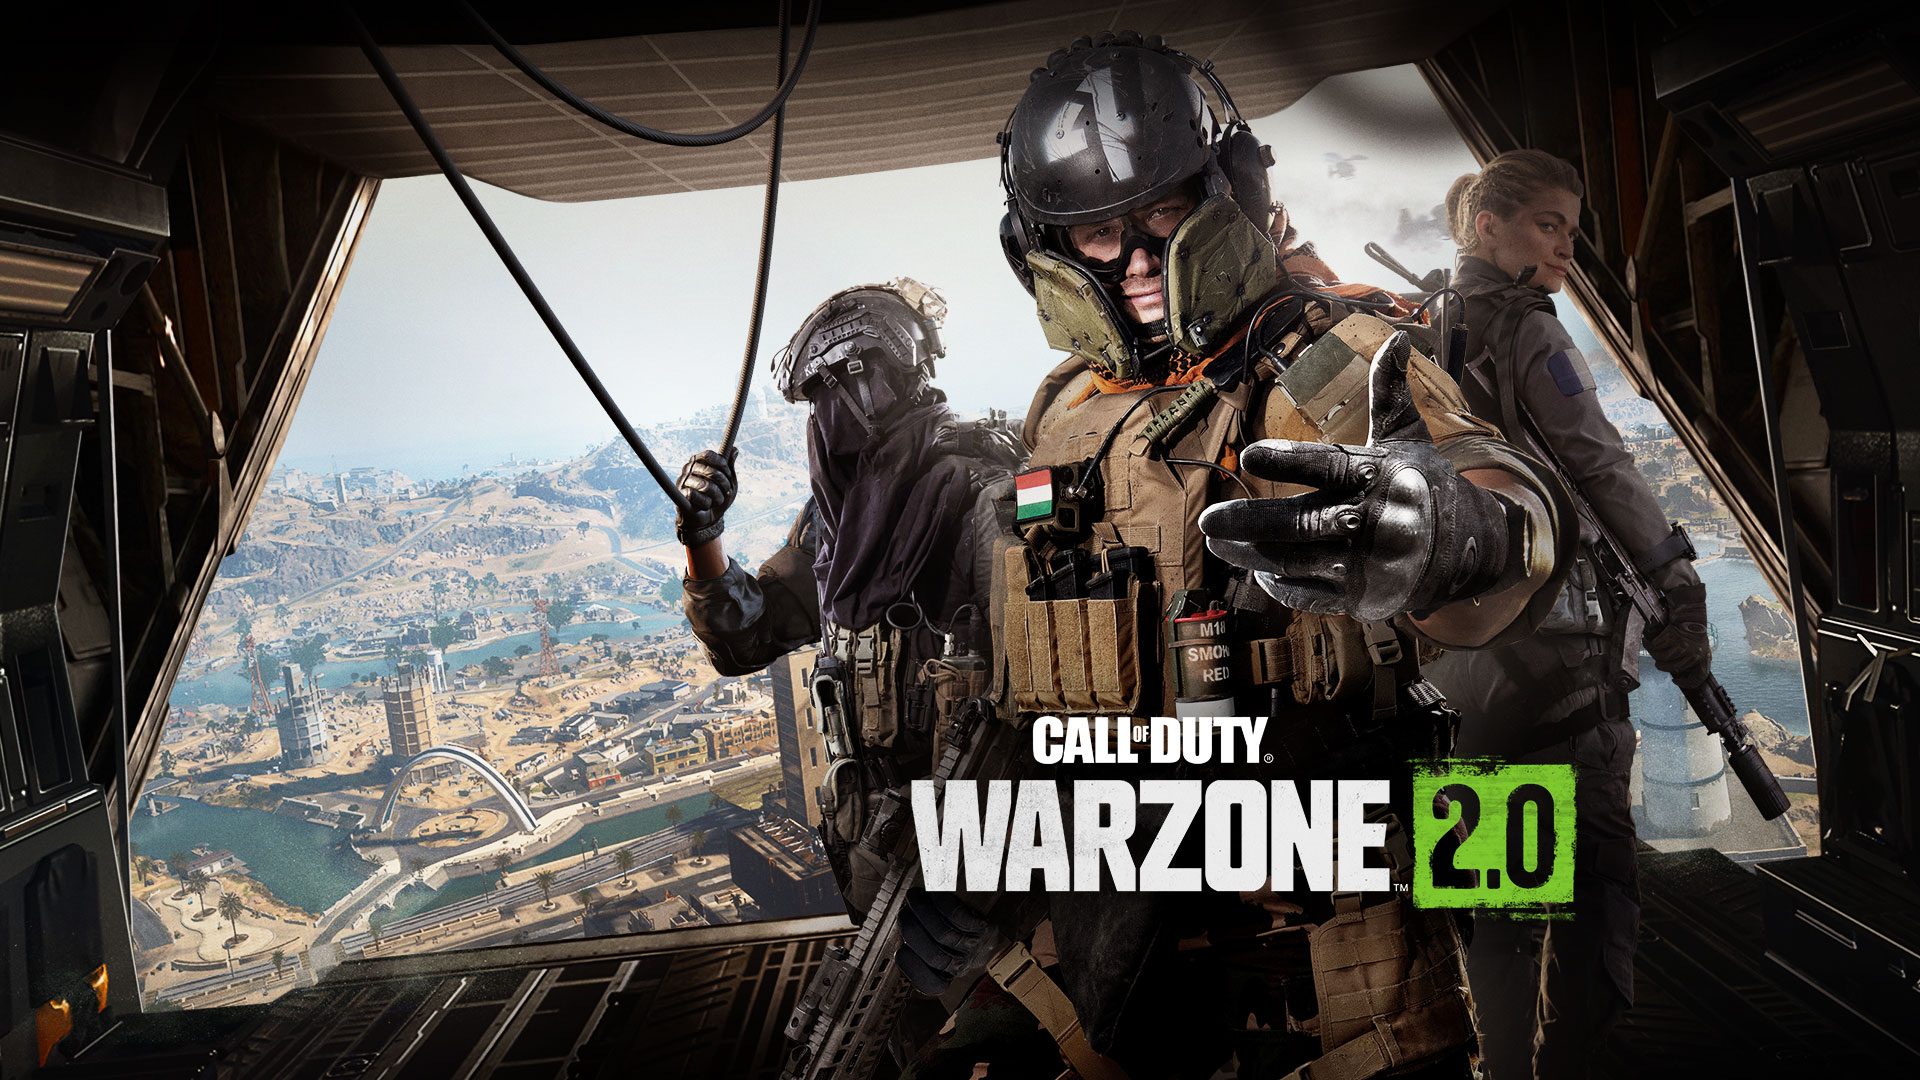 Call of Duty Warzone 2.0, debout à l’arrière d’un avion de transport, un trio d’opérateurs vous invite à prendre part à l’action.